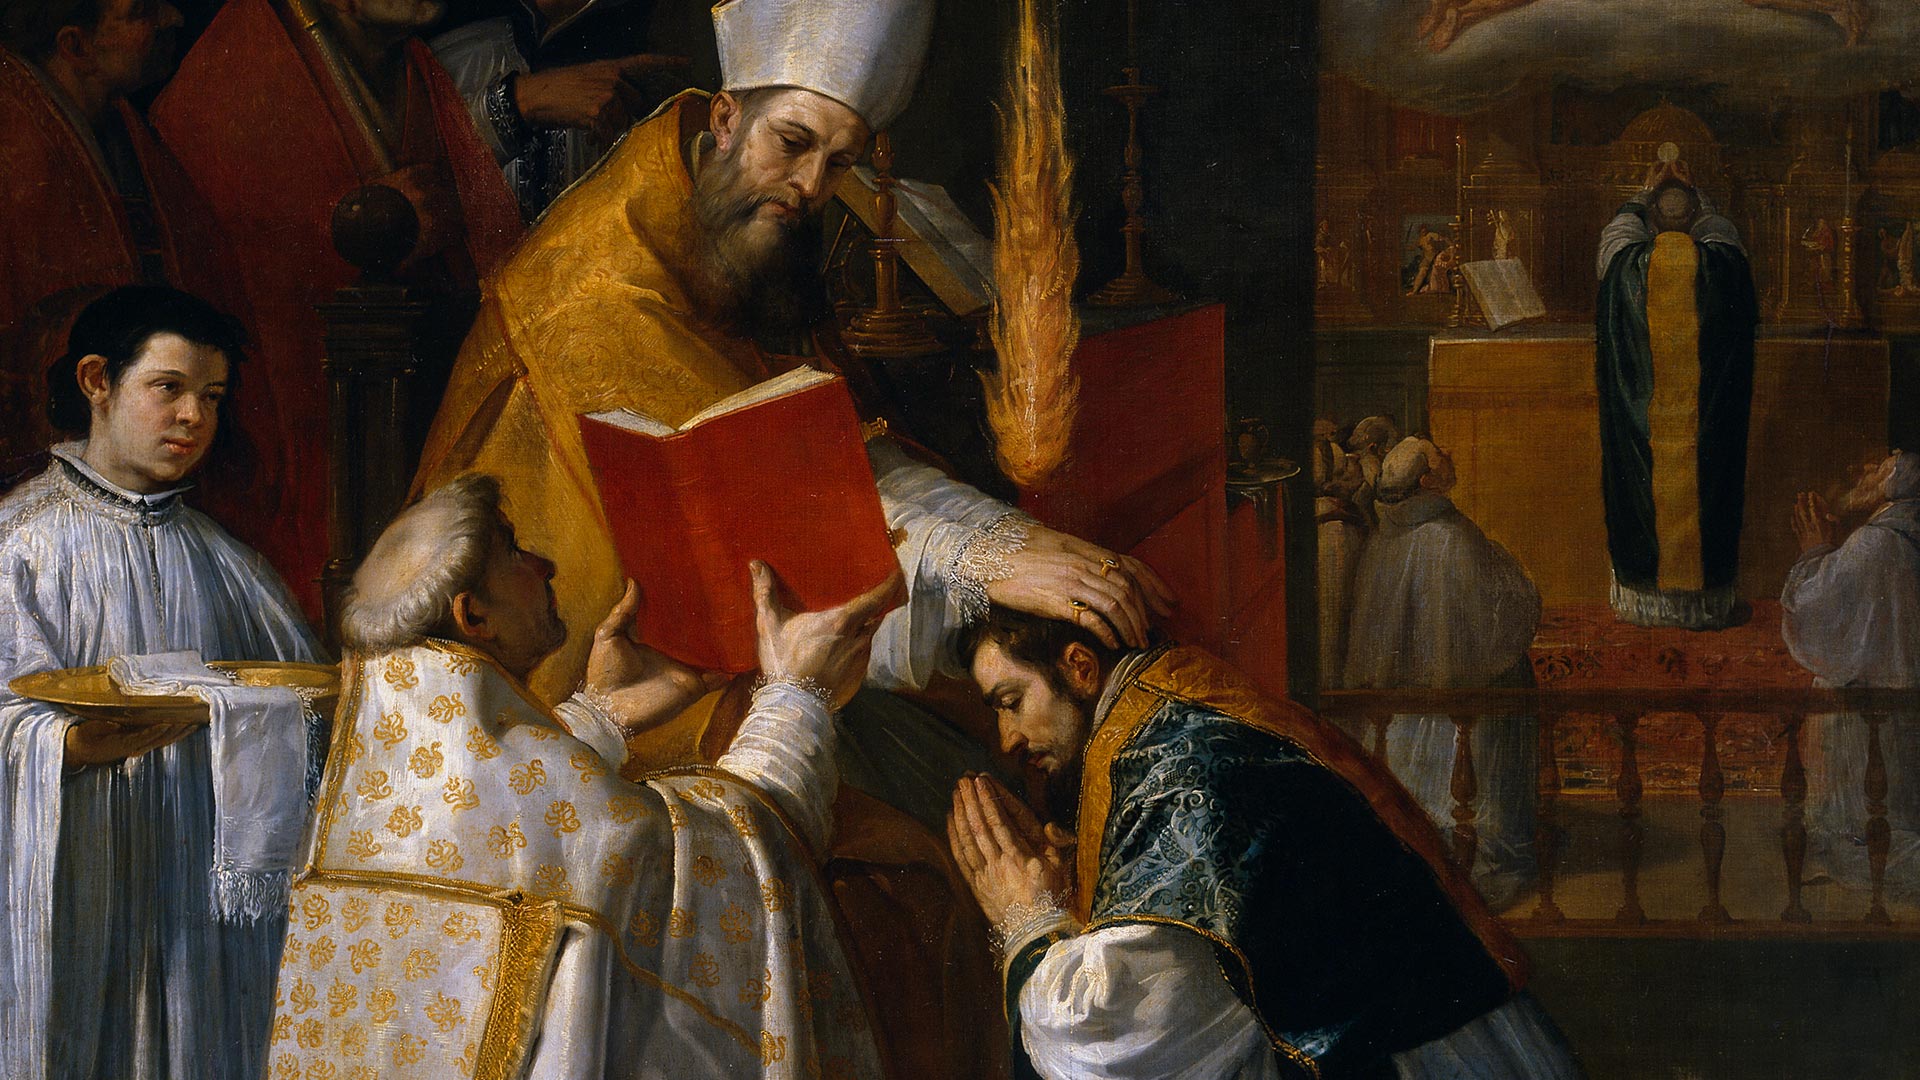 As origens bíblicas do sacramento da Ordem